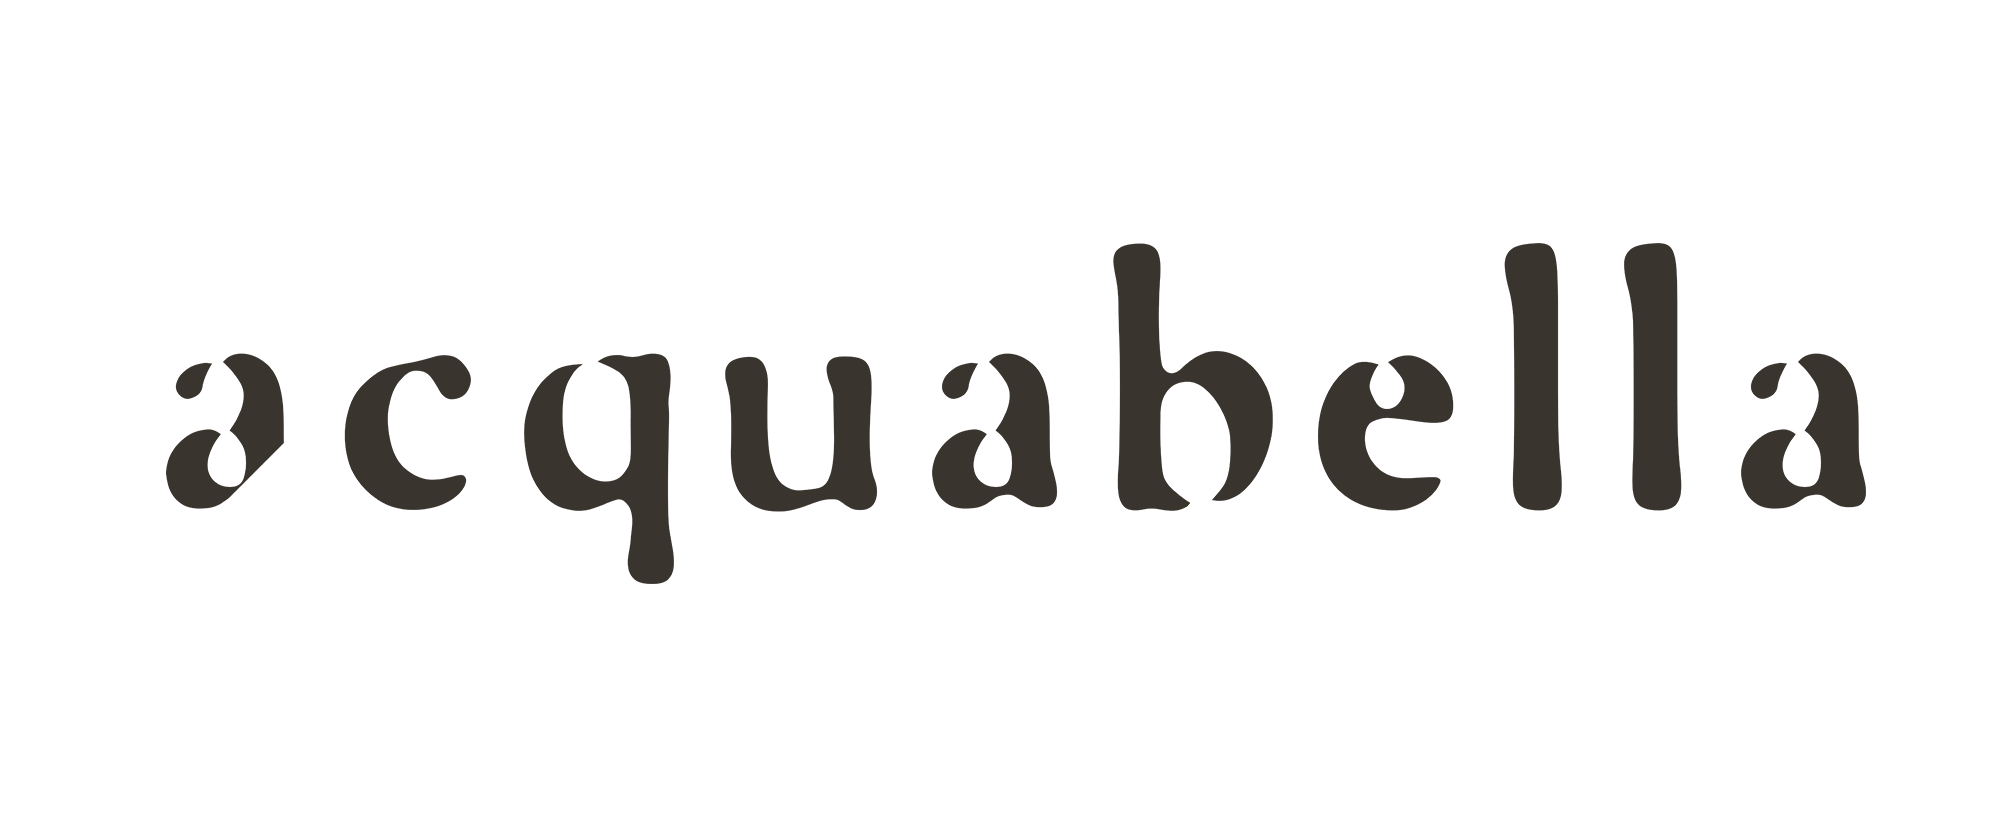 Acquabella Logo